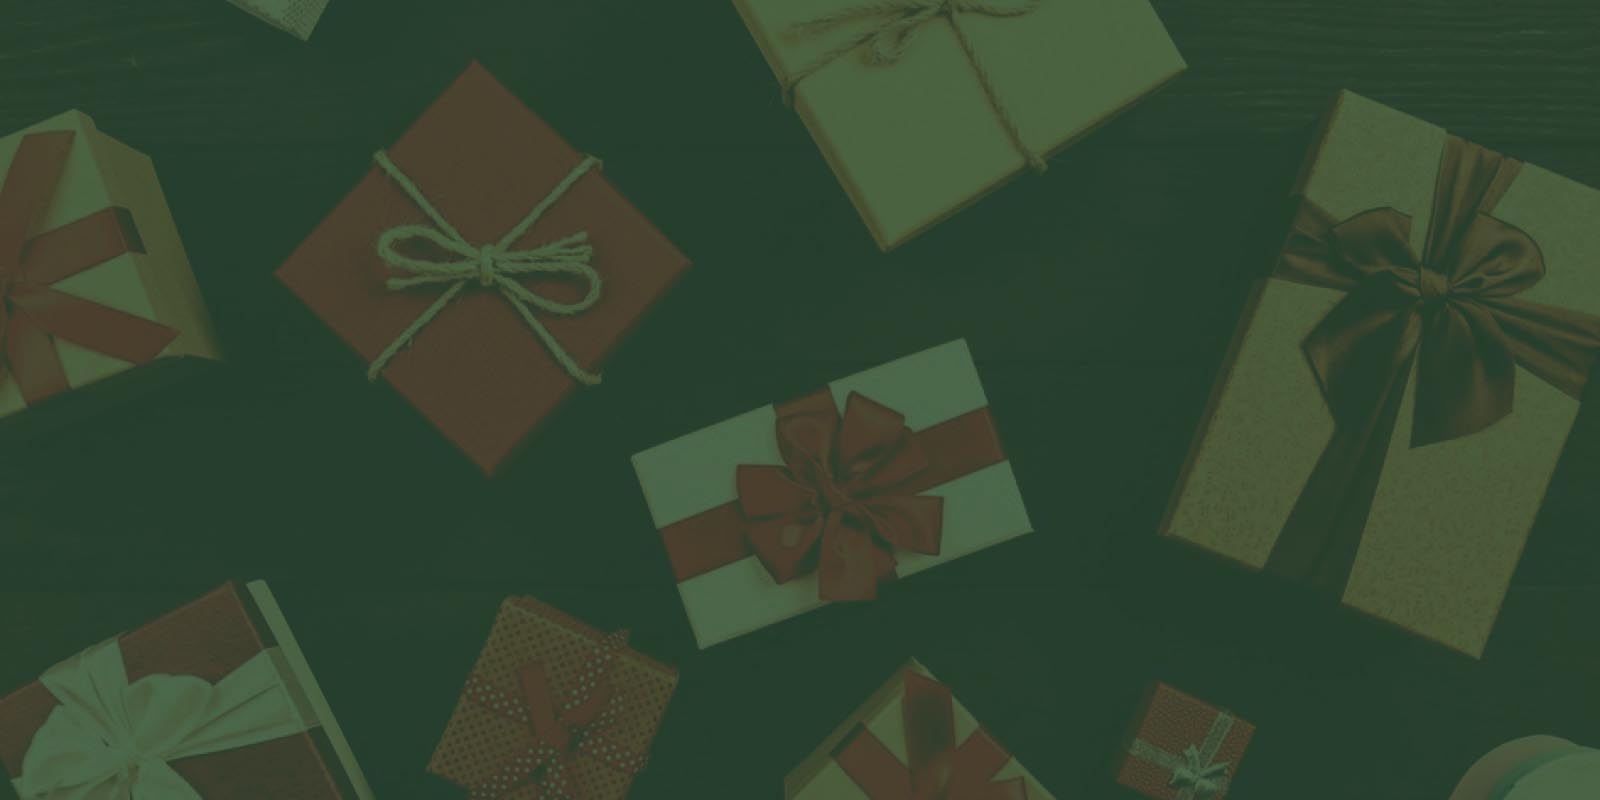 Кейс интернет-магазина подарков: как за пару кликов заработать более 2 500 000 тенге перед праздниками